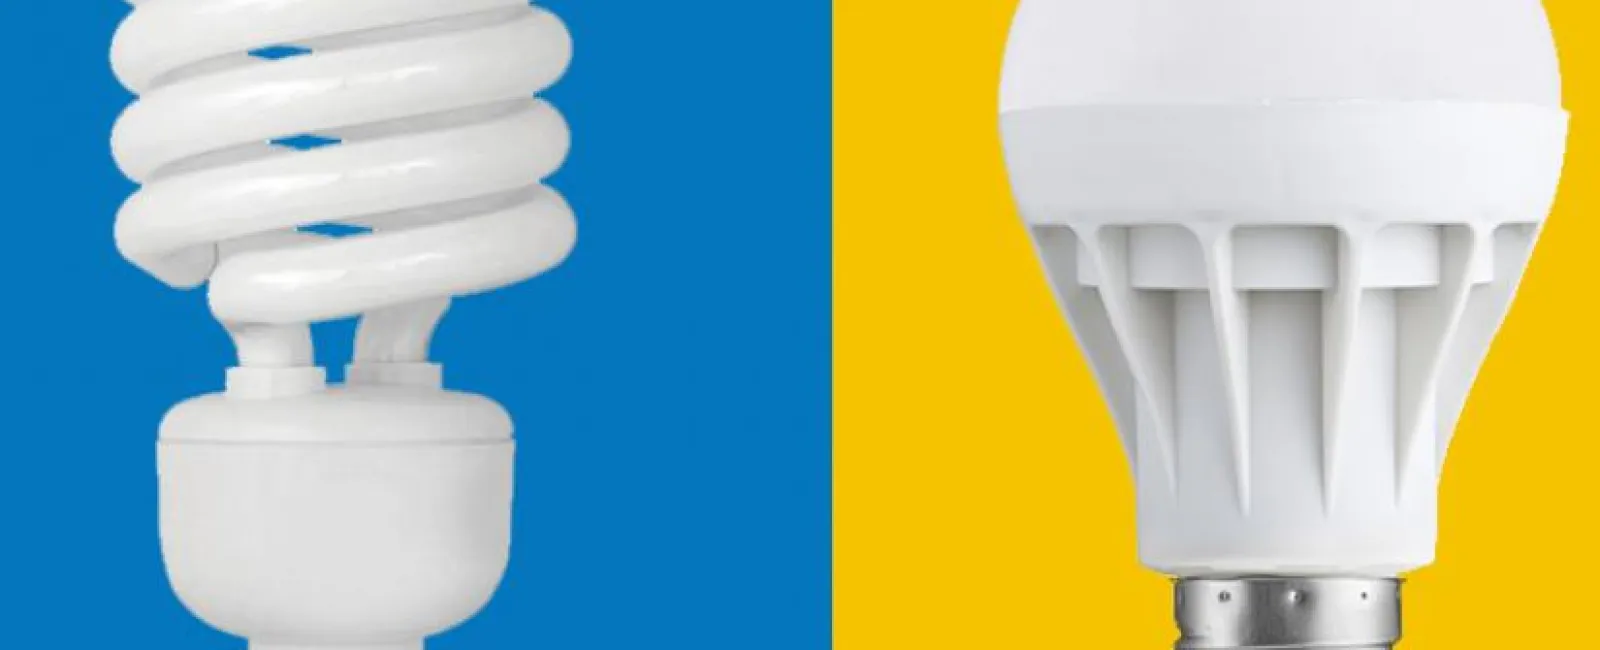 Lightbulb Wars LED vs. Fluorescent